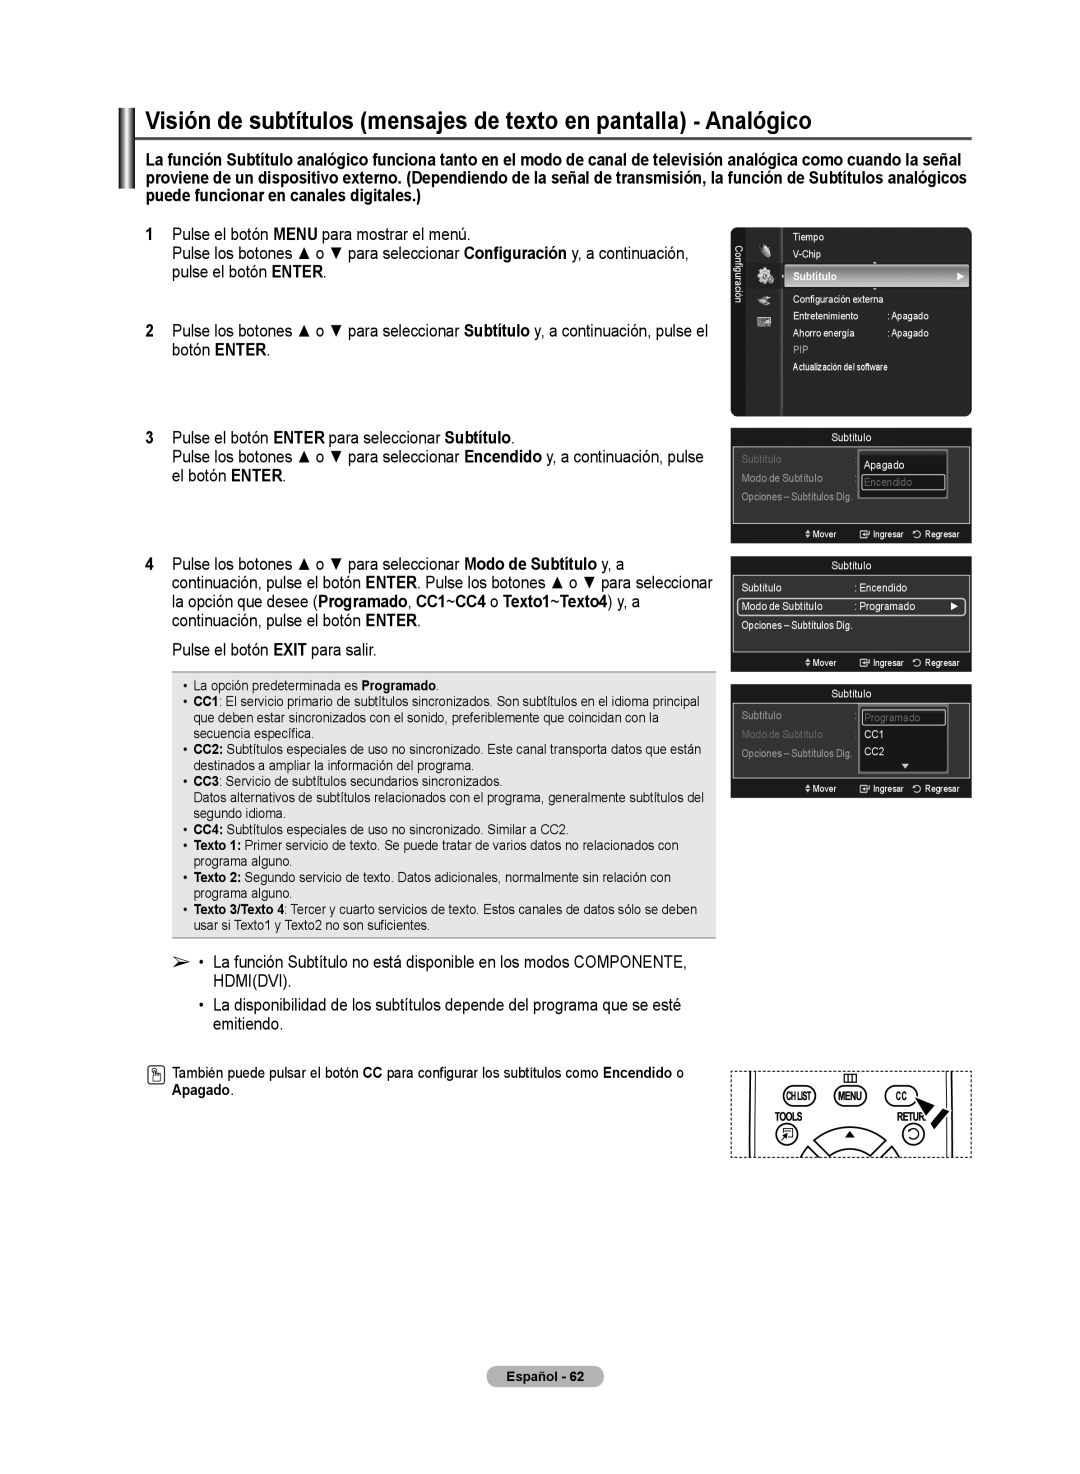 Samsung 510 user manual Visión de subtítulos mensajes de texto en pantallla - Analógico, Apagado 